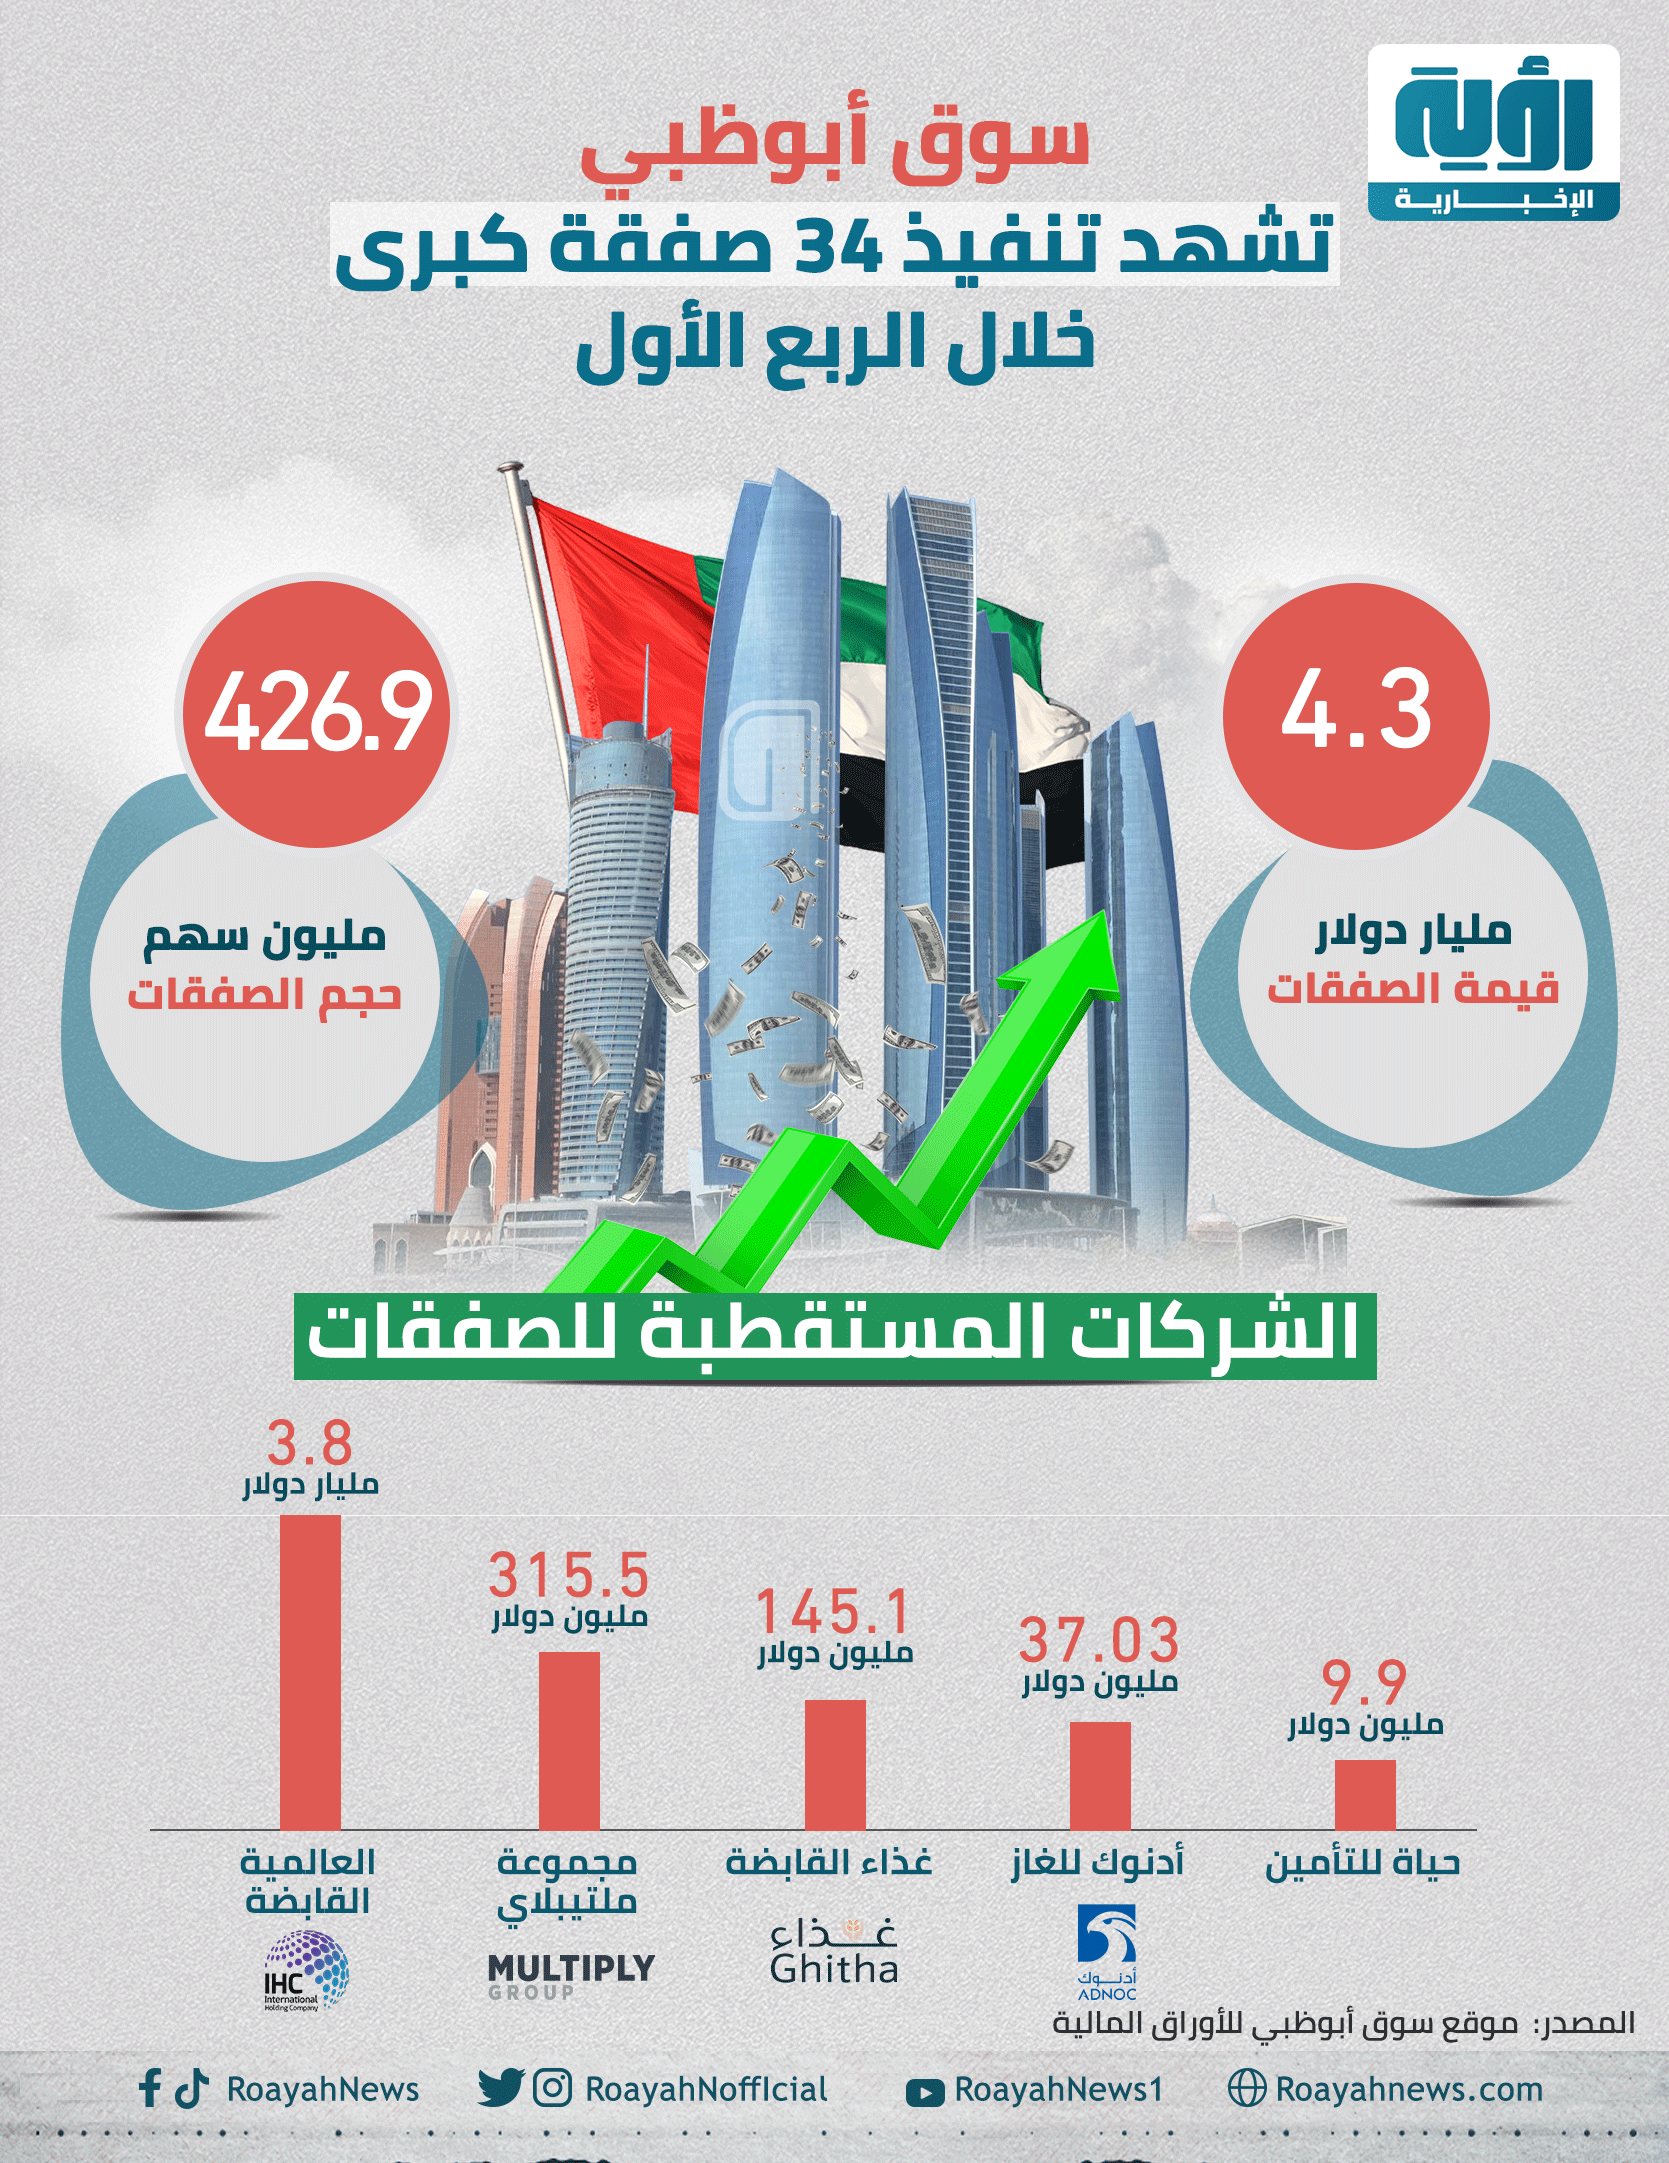 سوق أبوظبي تشهد تنفيذ 34 صفقة كبرى خلال الربع الأول